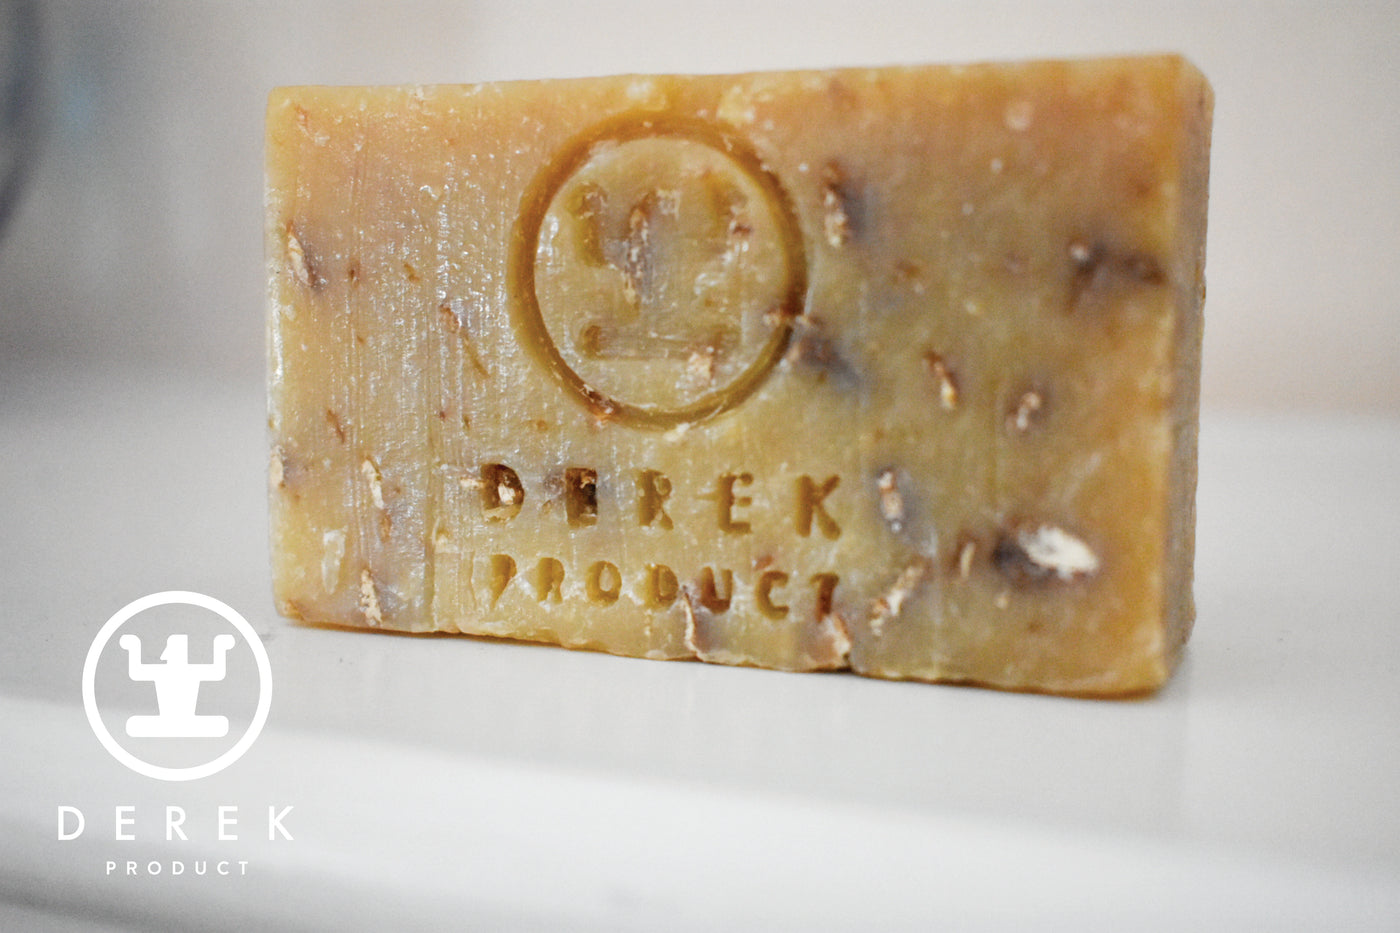 Honey Oatmeal Bar 3.75 oz (105g) - Soap for Sensitive Skin - Derek Product